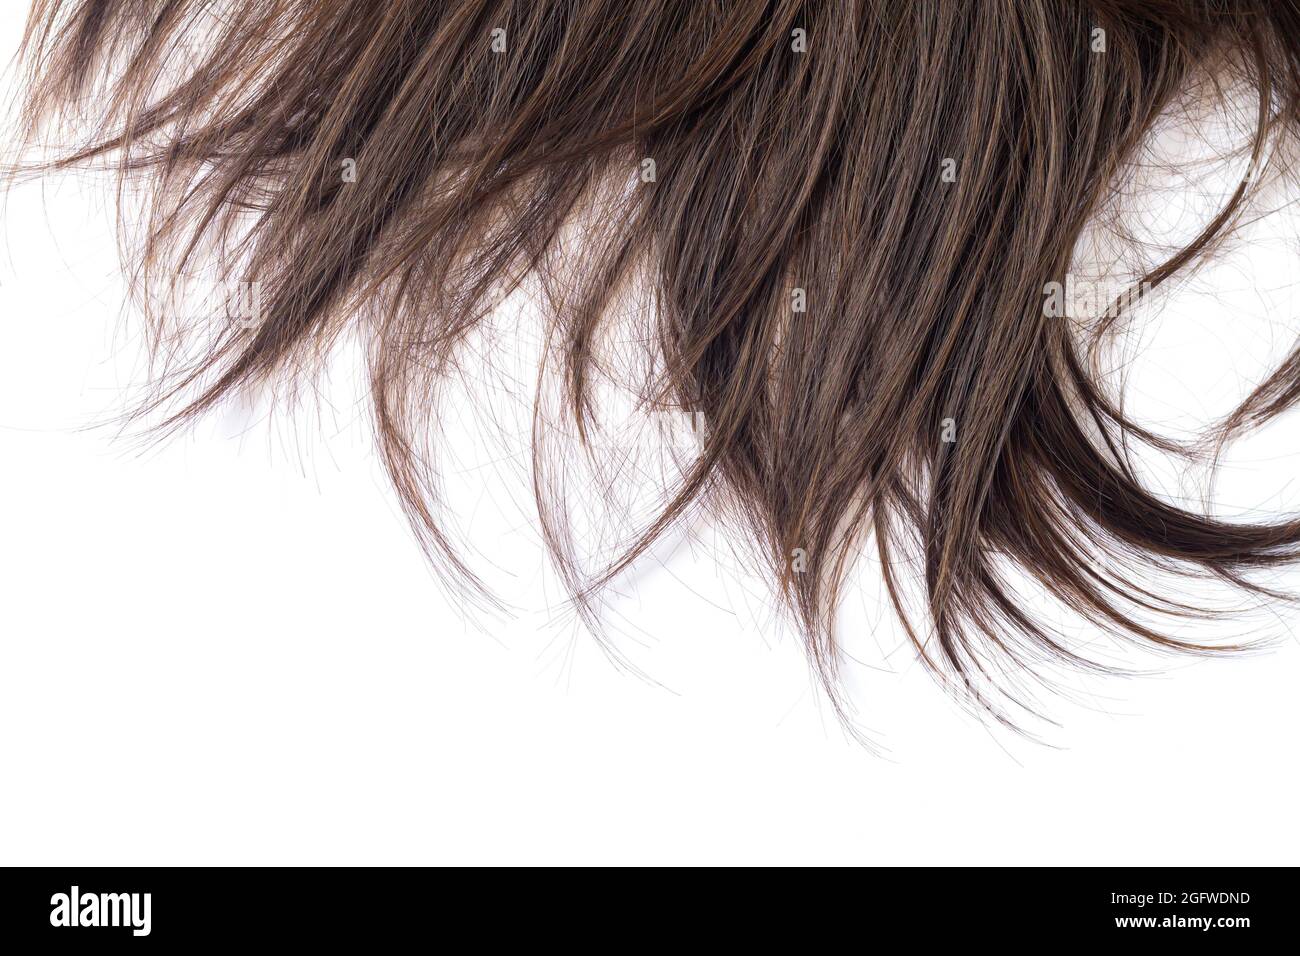 Ciocca di capelli lisci brunette scuri isolati su sfondo bianco. Concetto di taglio, styling, cura o estensione dei capelli Foto Stock